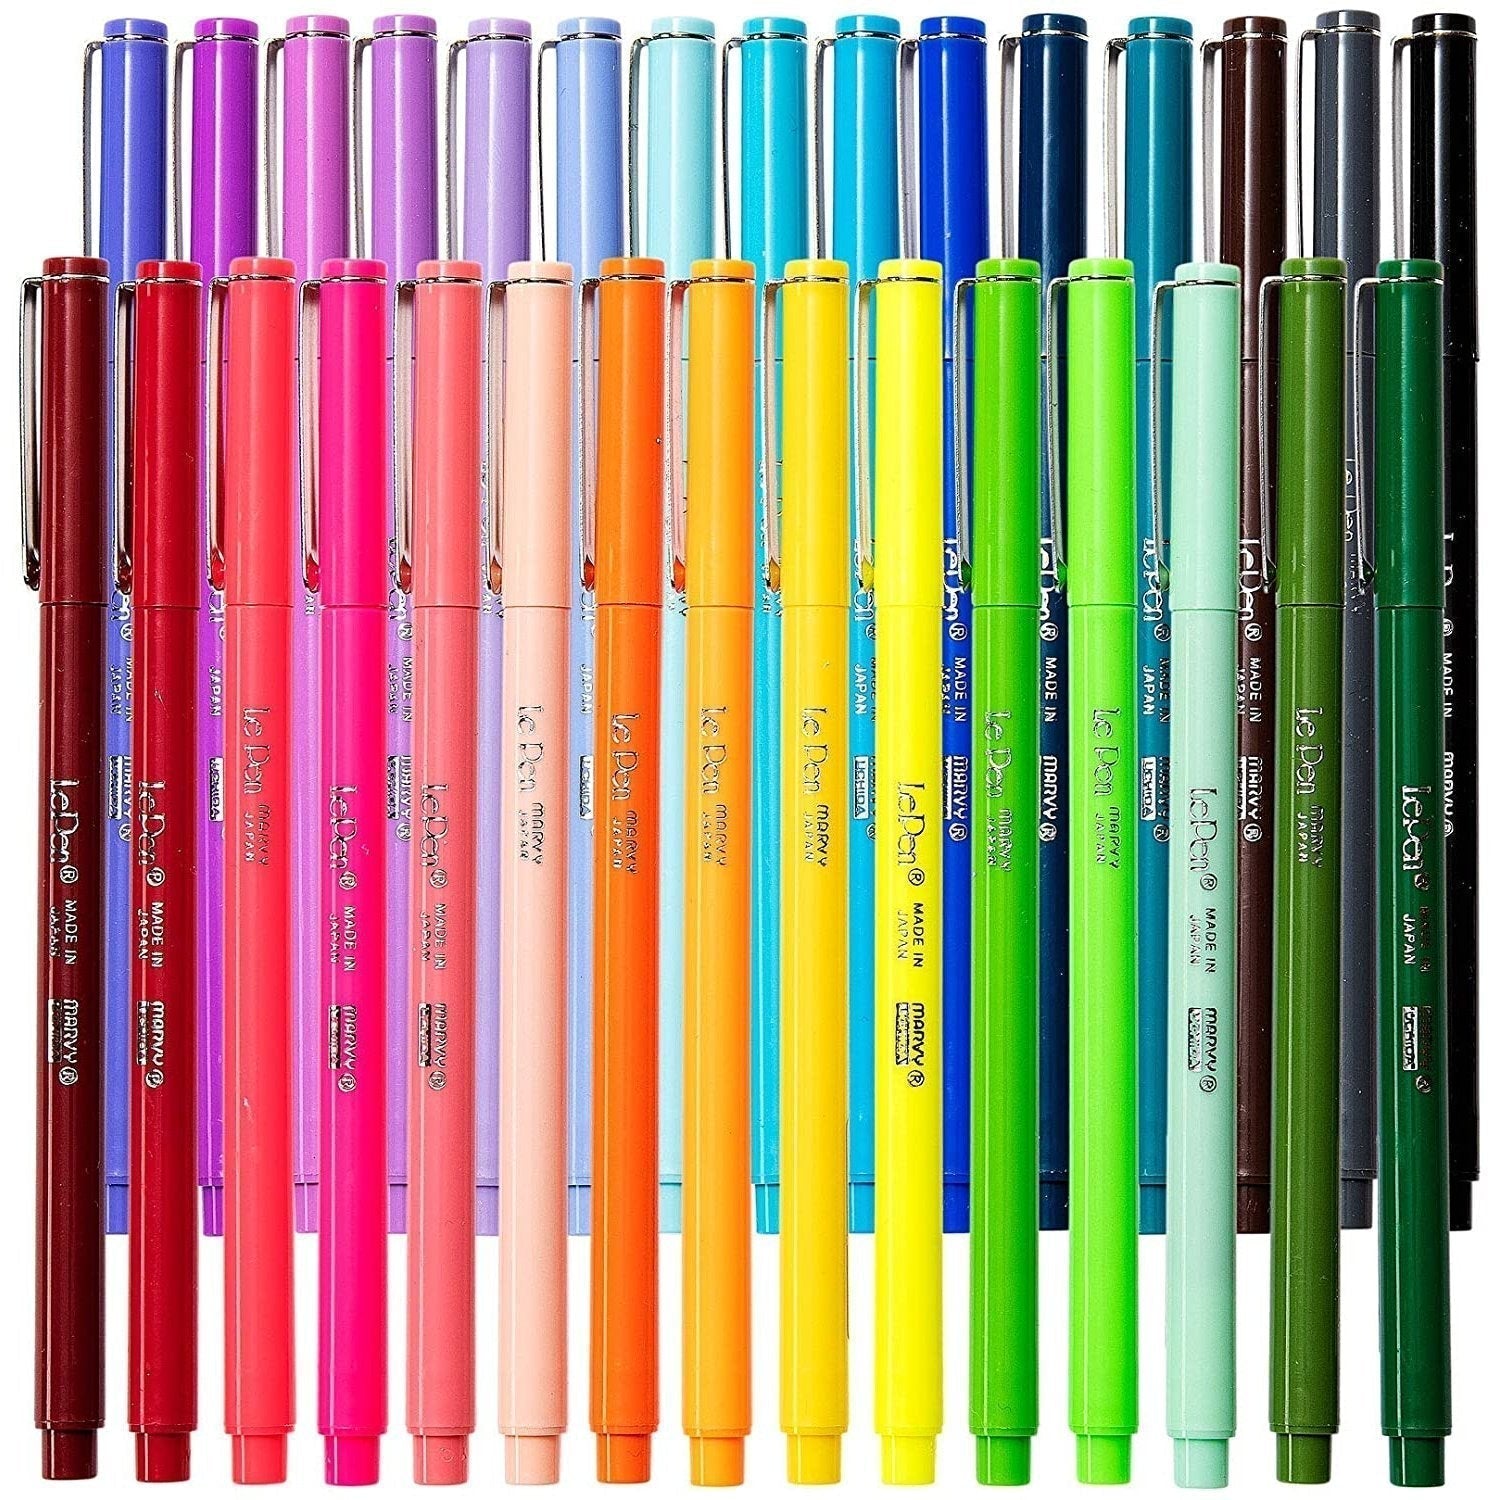 4 Gel Highlighter Pens Assorted Colors Neon Lipstick Pen Gel Pen Neon  Yellow Green Pink Orange Neon Gel Stick Pen Kids Drawing Pen Set Gift 